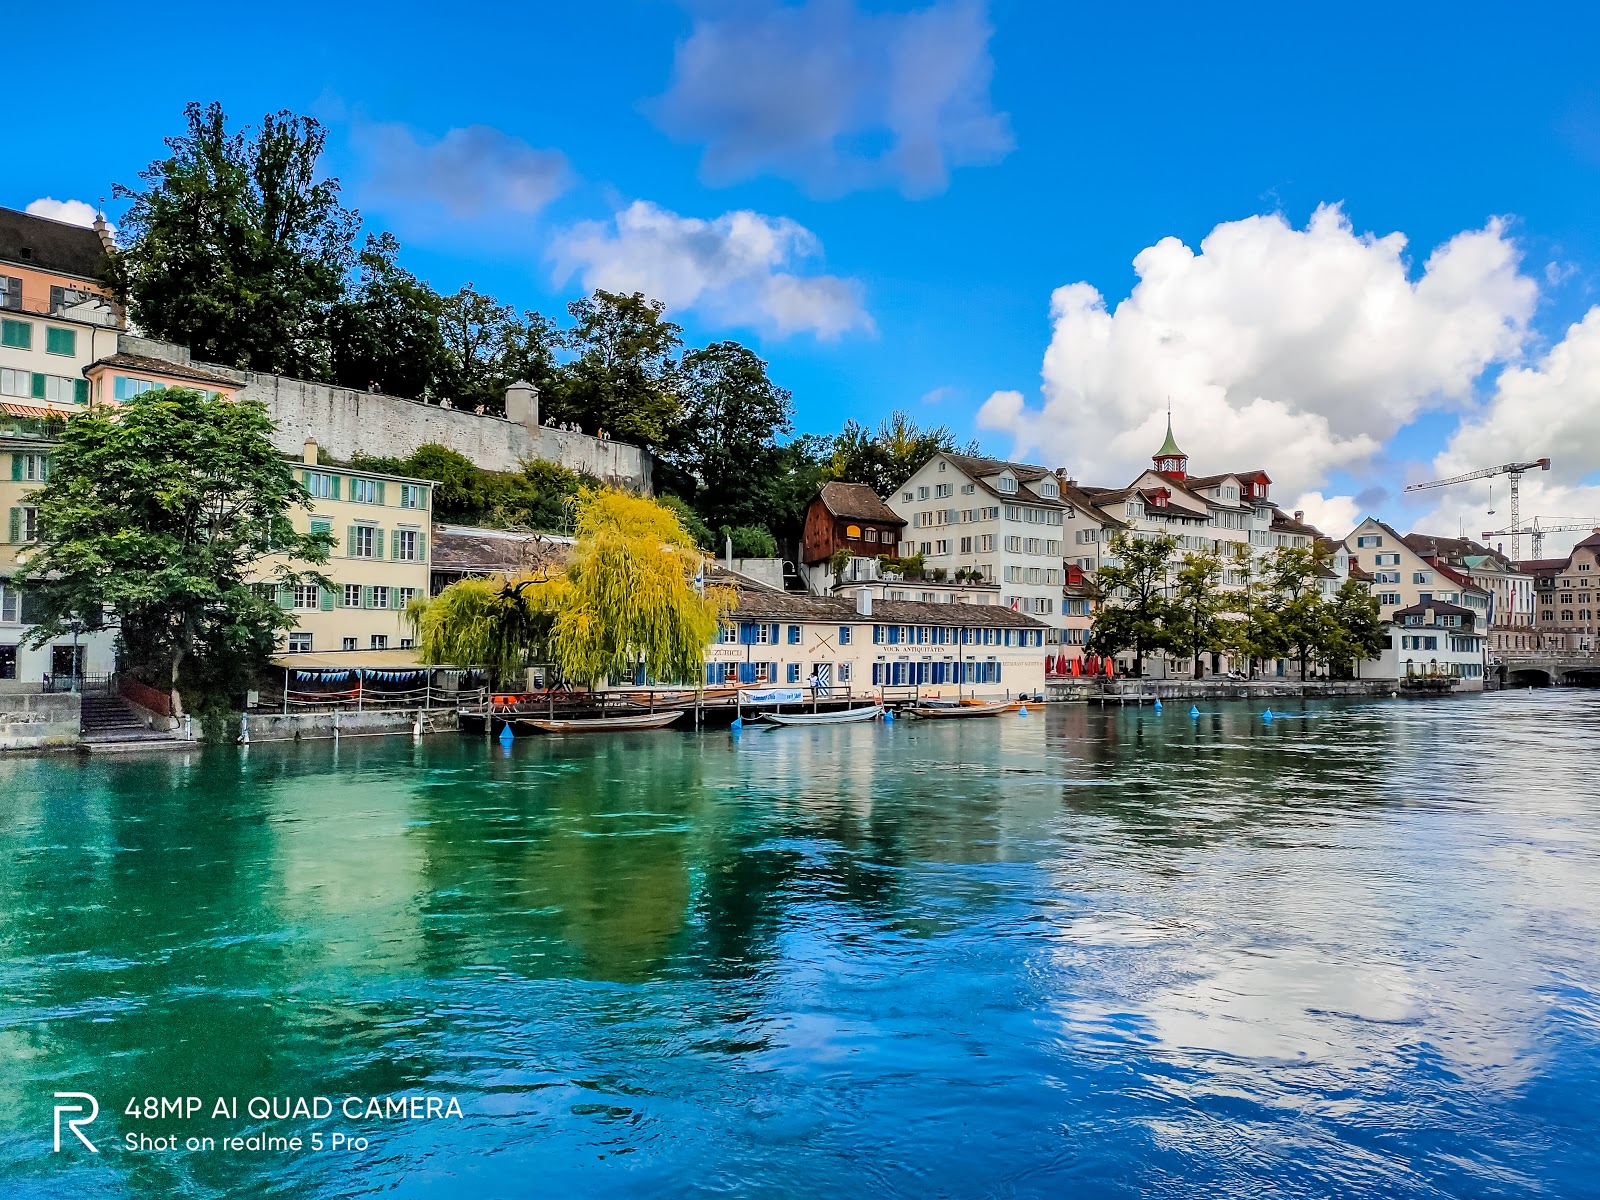 Bờ Limmat nằm ở thành phố Zurich của Thụy Sĩ với cảnh quan thiên nhiên tuyệt đẹp và độc đáo. Hãy đón xem bức hình của bờ sông Limmat, là nơi lưu giữ bao nhiêu kỷ niệm đẹp và kiến trúc cổ kính của thành phố Zurich, dưới nắng vàng của ánh hoàng hôn.